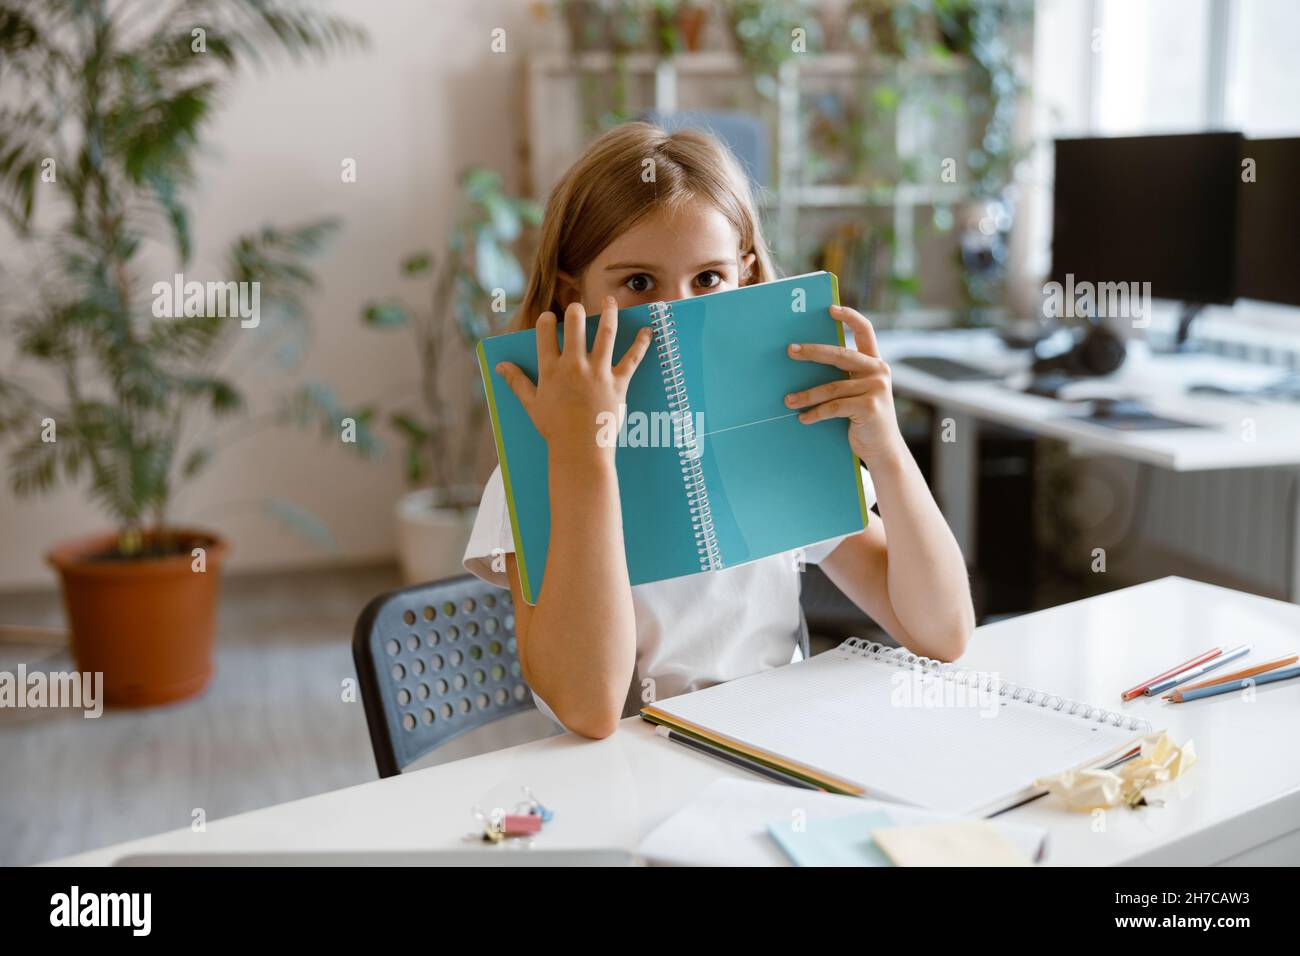 Schockiertes kleines Mädchen versteckt sich hinter Notebook am Tisch im hellen Raum Stockfoto